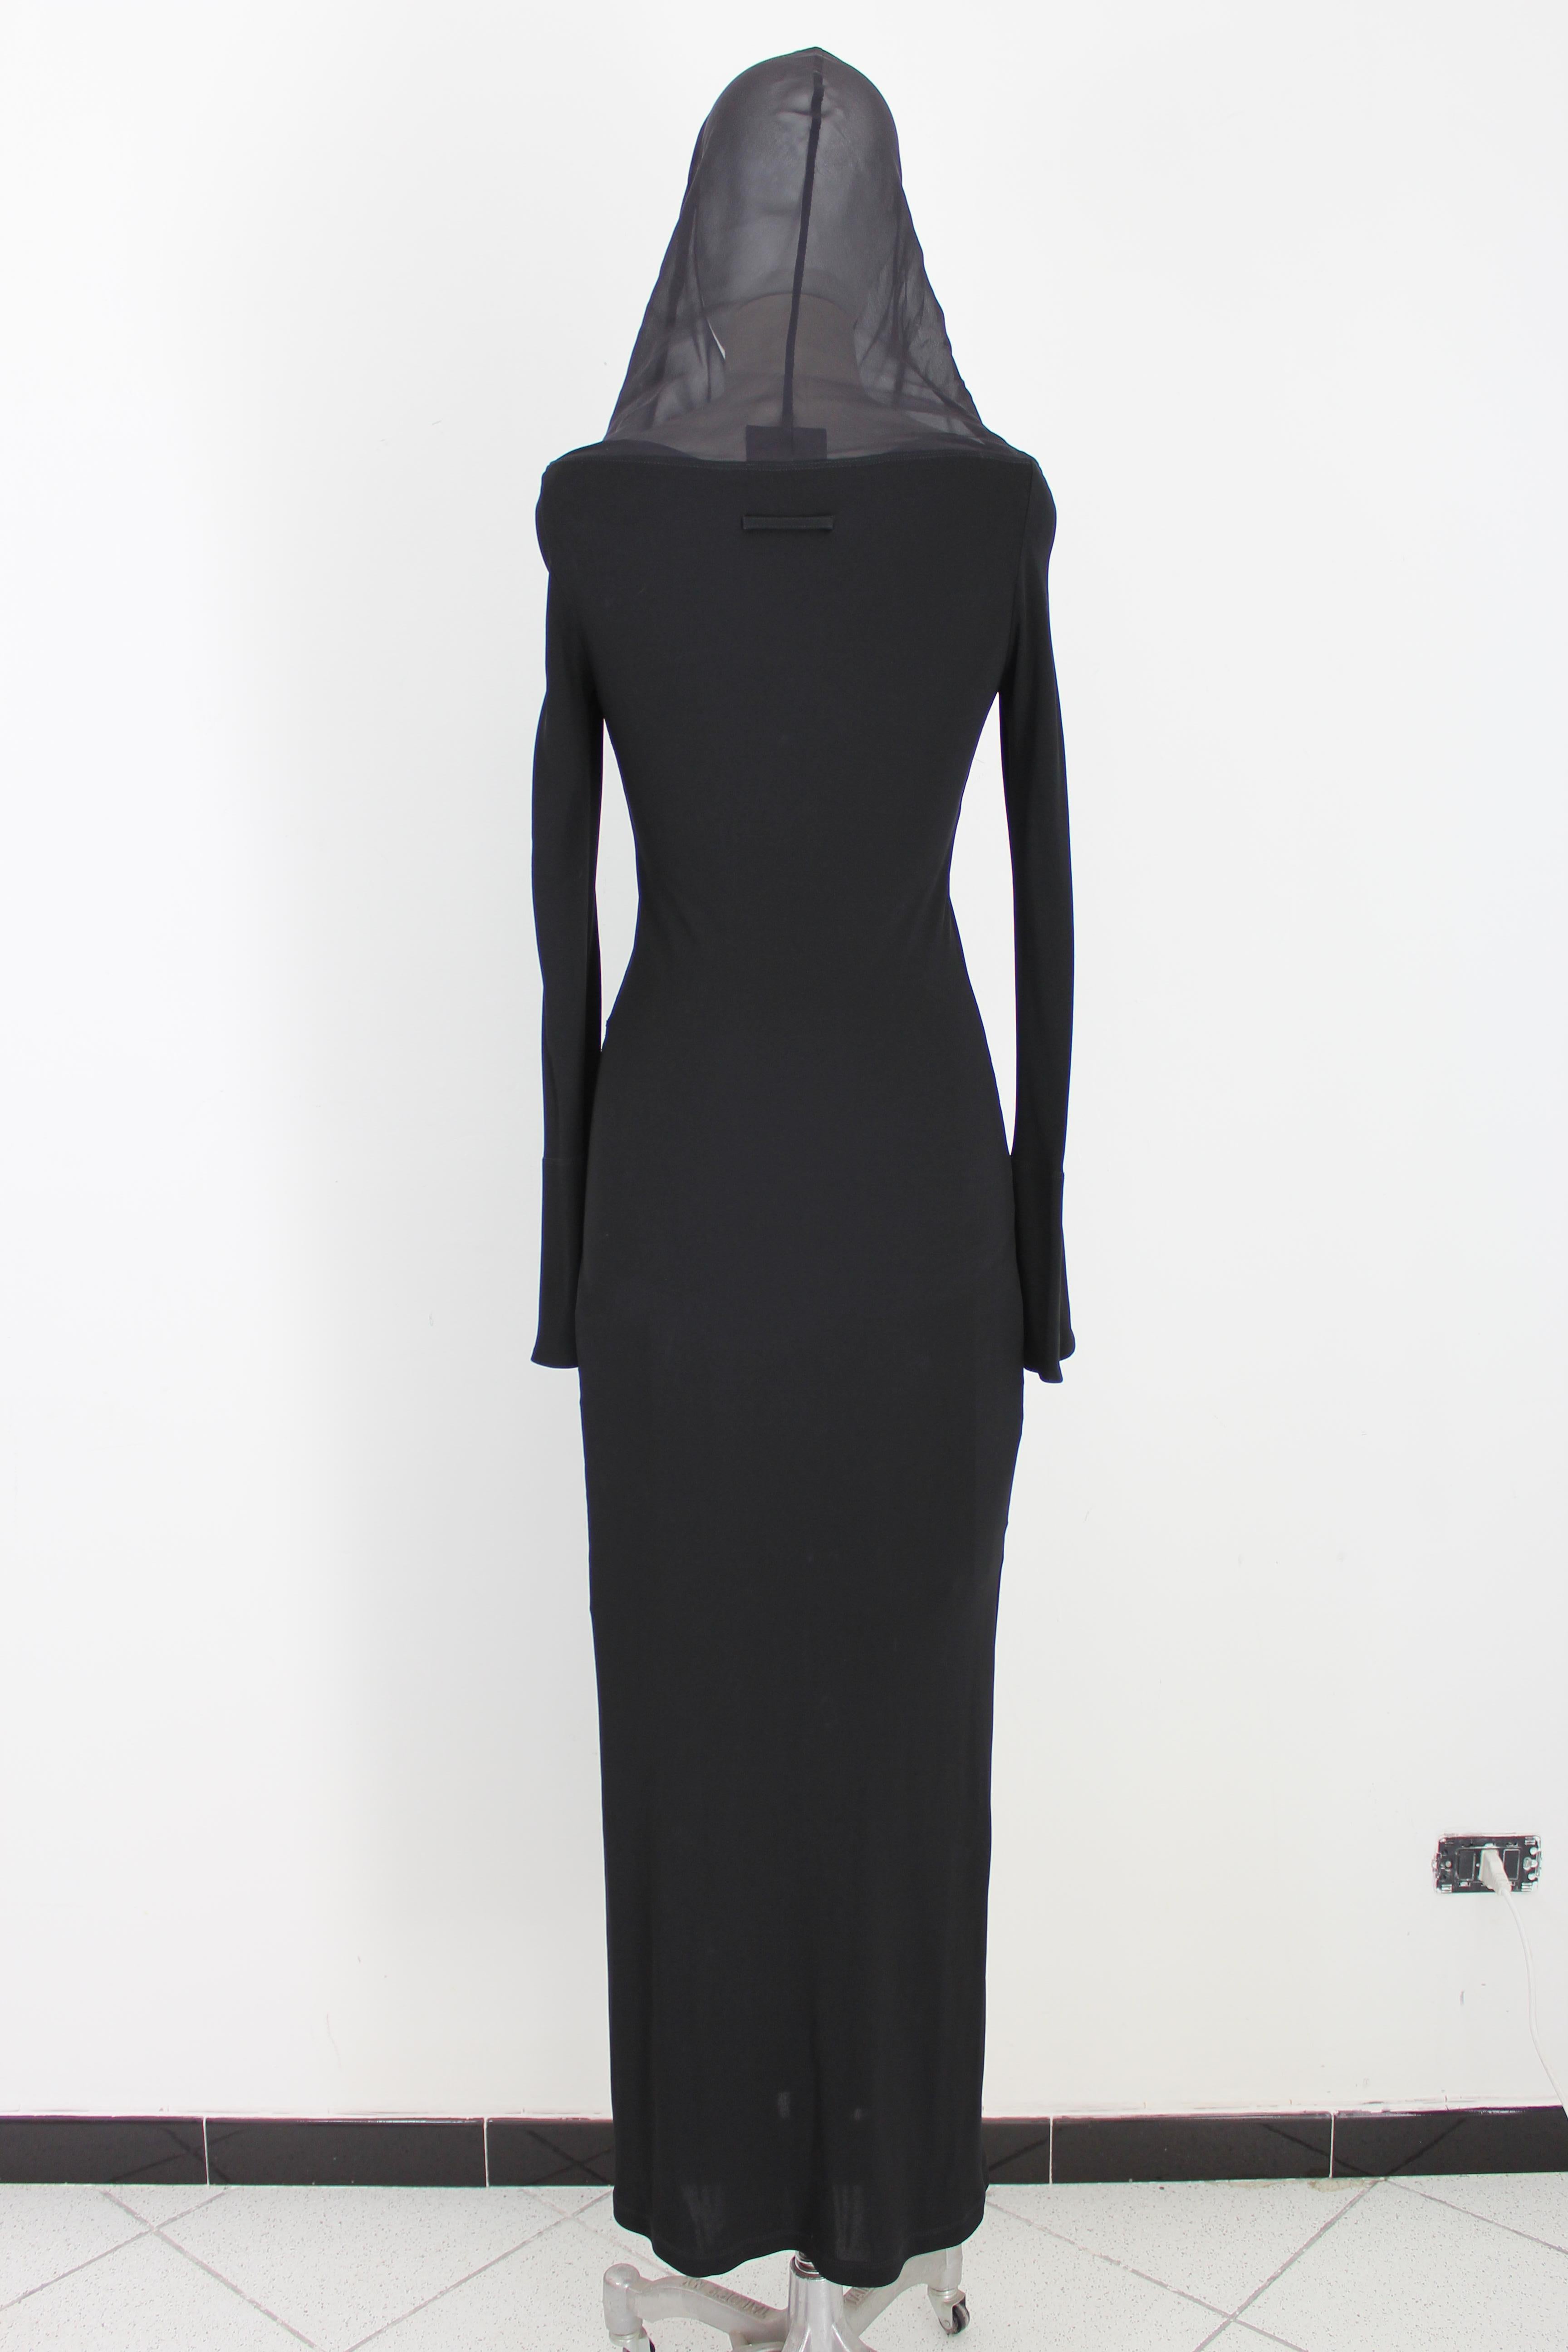 Women's Jean Paul Gaultier Black Silk Bodycon Long Evening Dress 2000s 